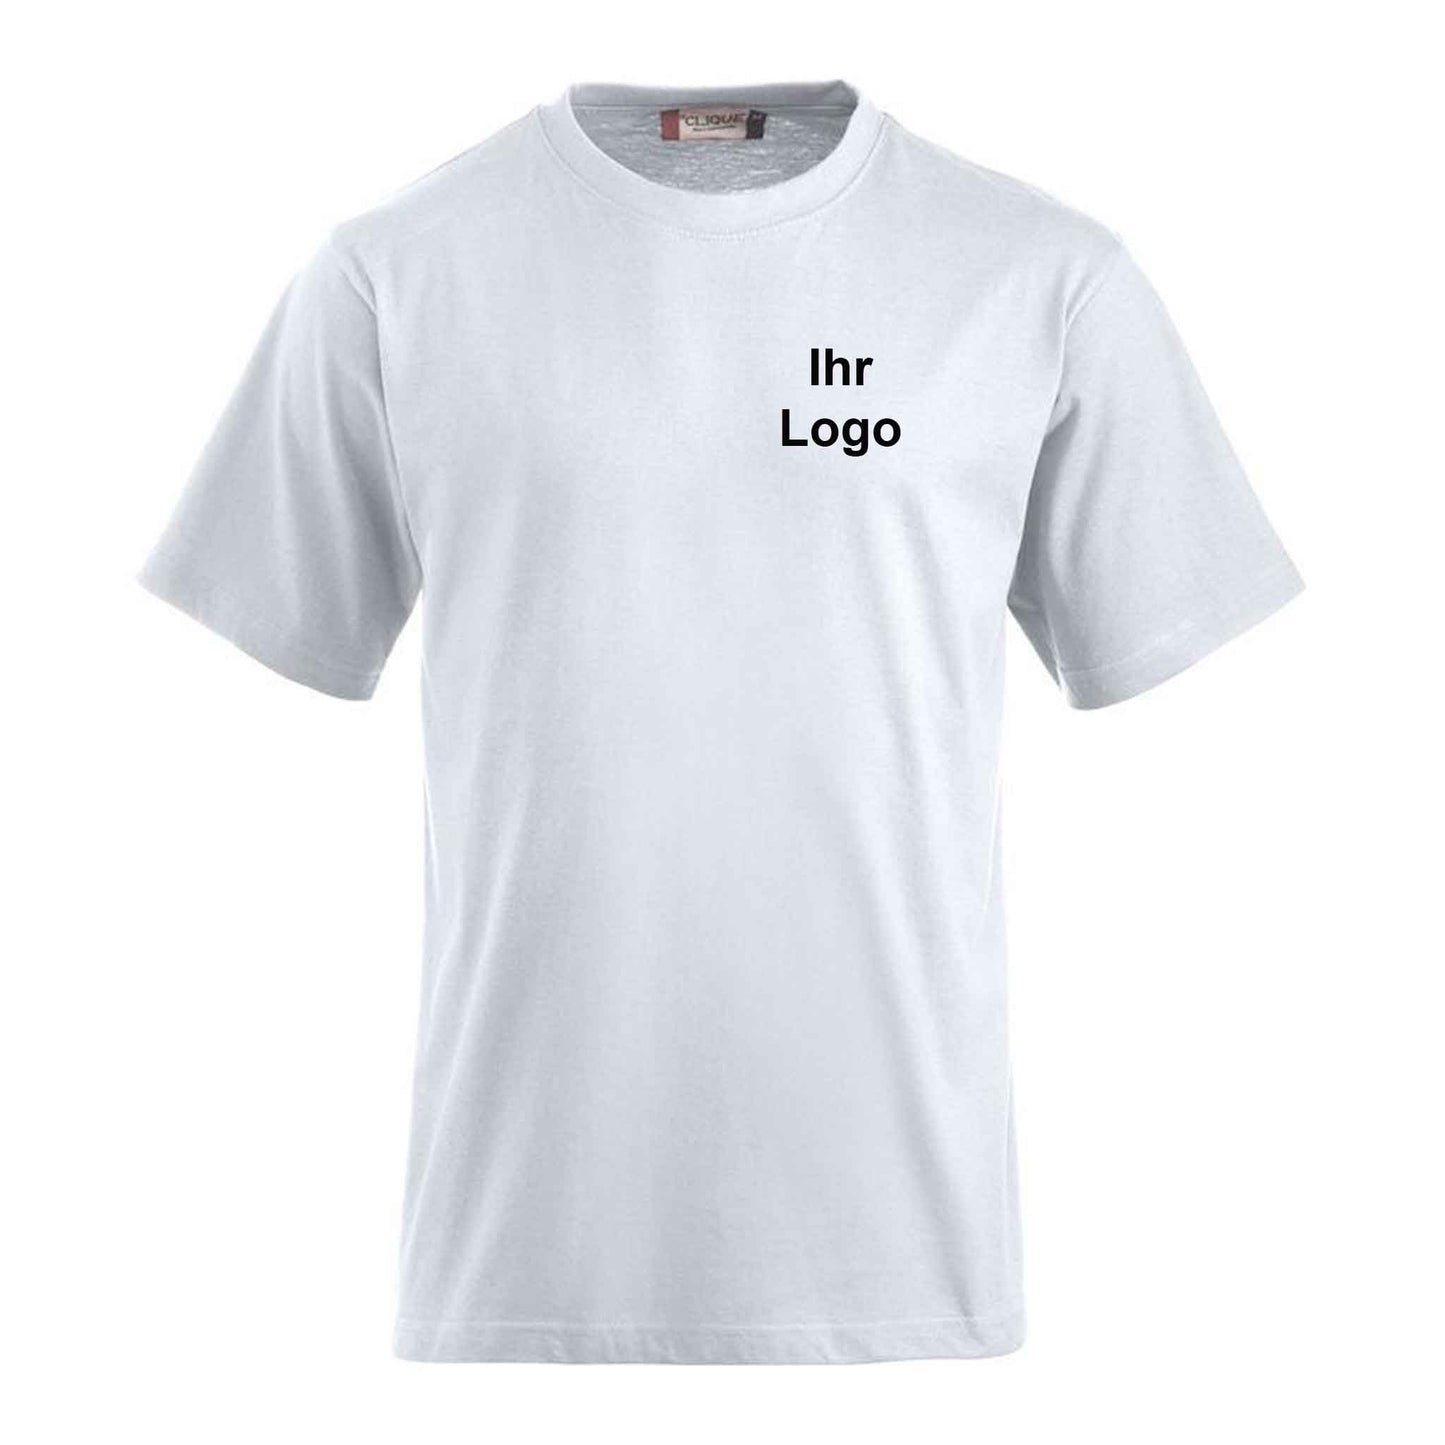 Weisse-T-Shirt-mit-Firmen-Logo-bedrucken-lassen